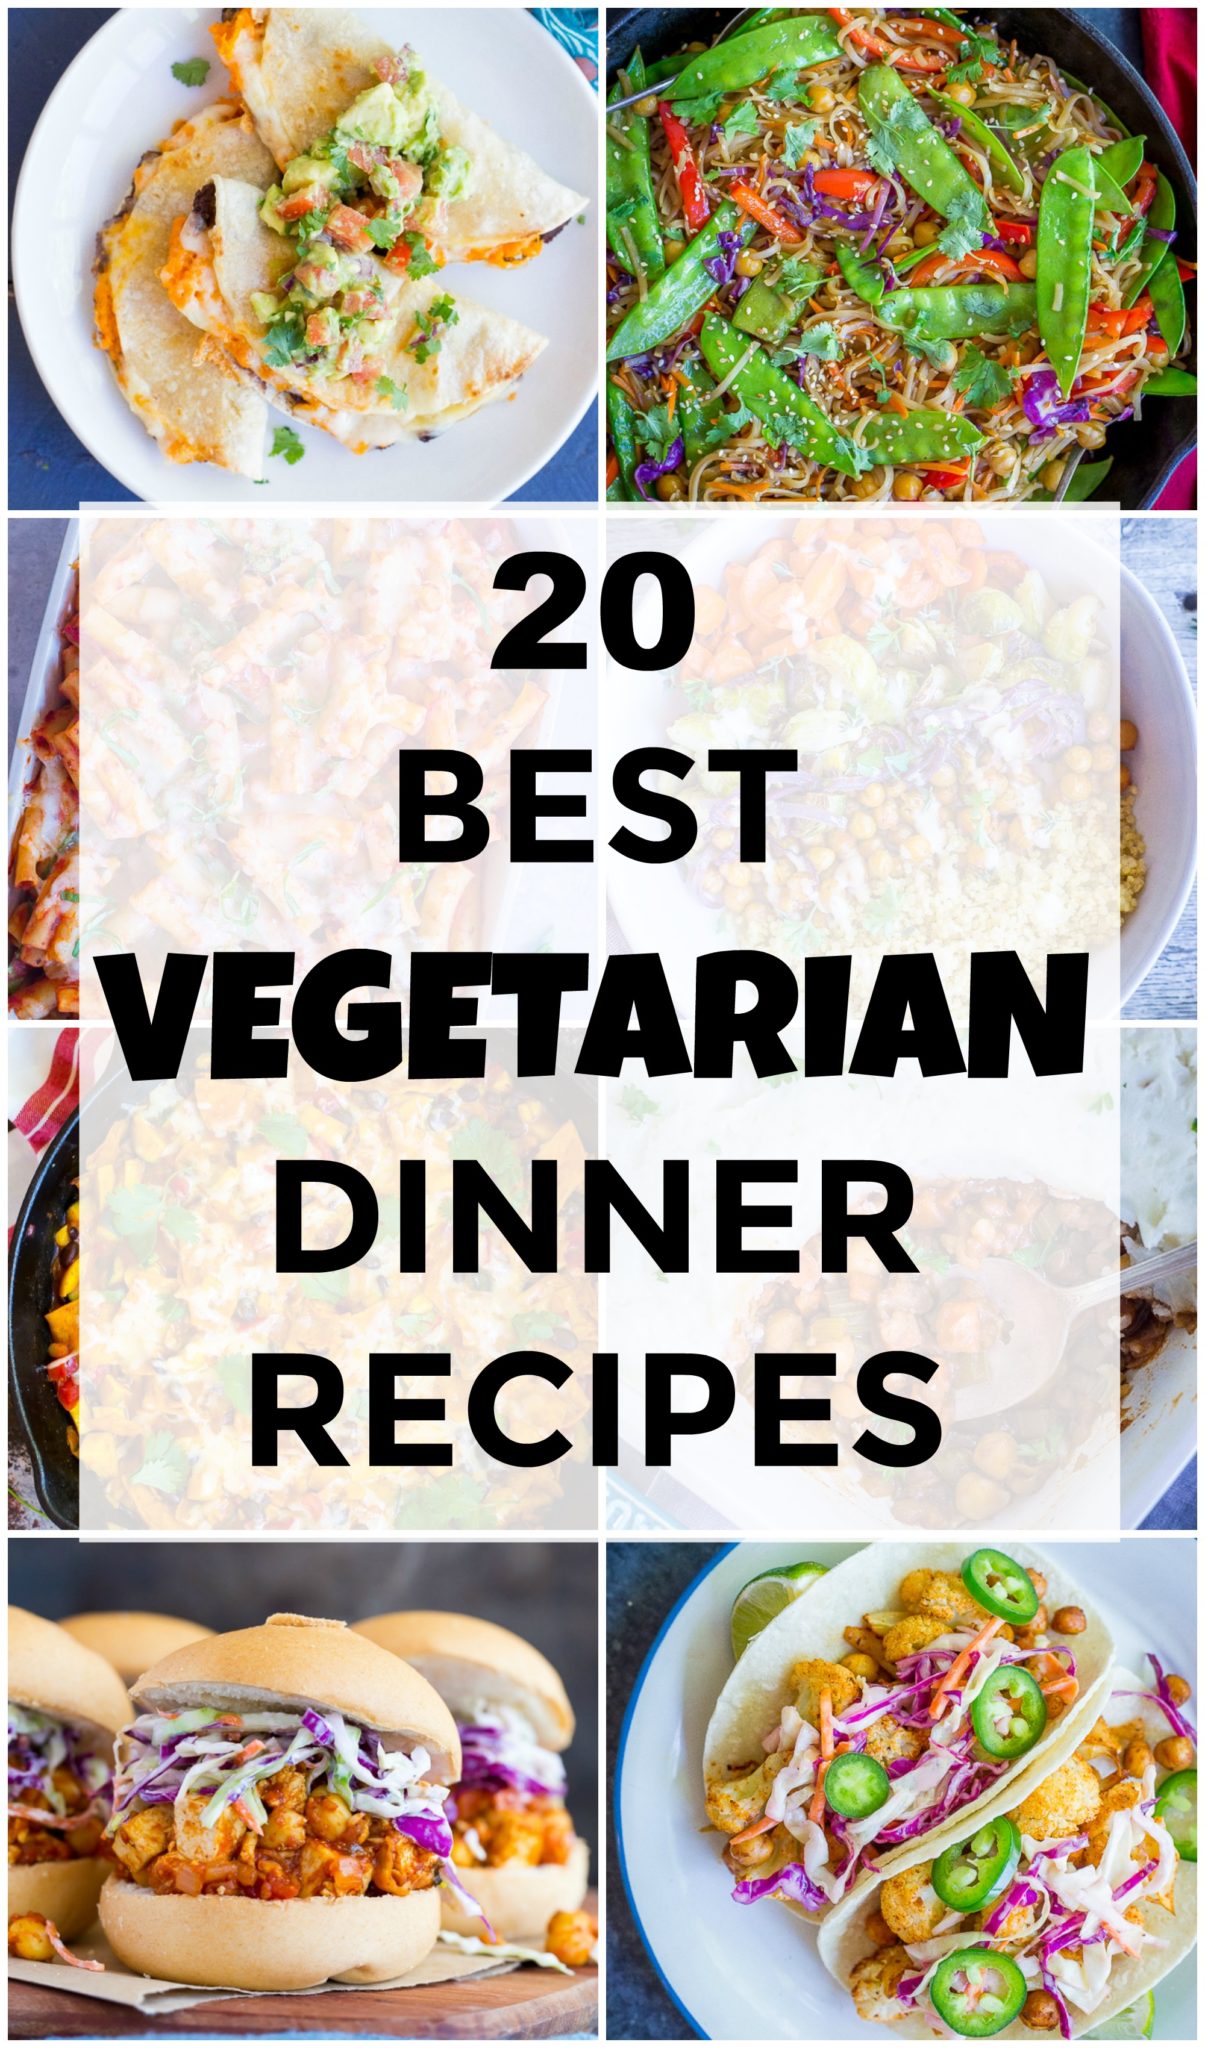 20 Best Vegetarian Dinner Recipes - She Likes Food